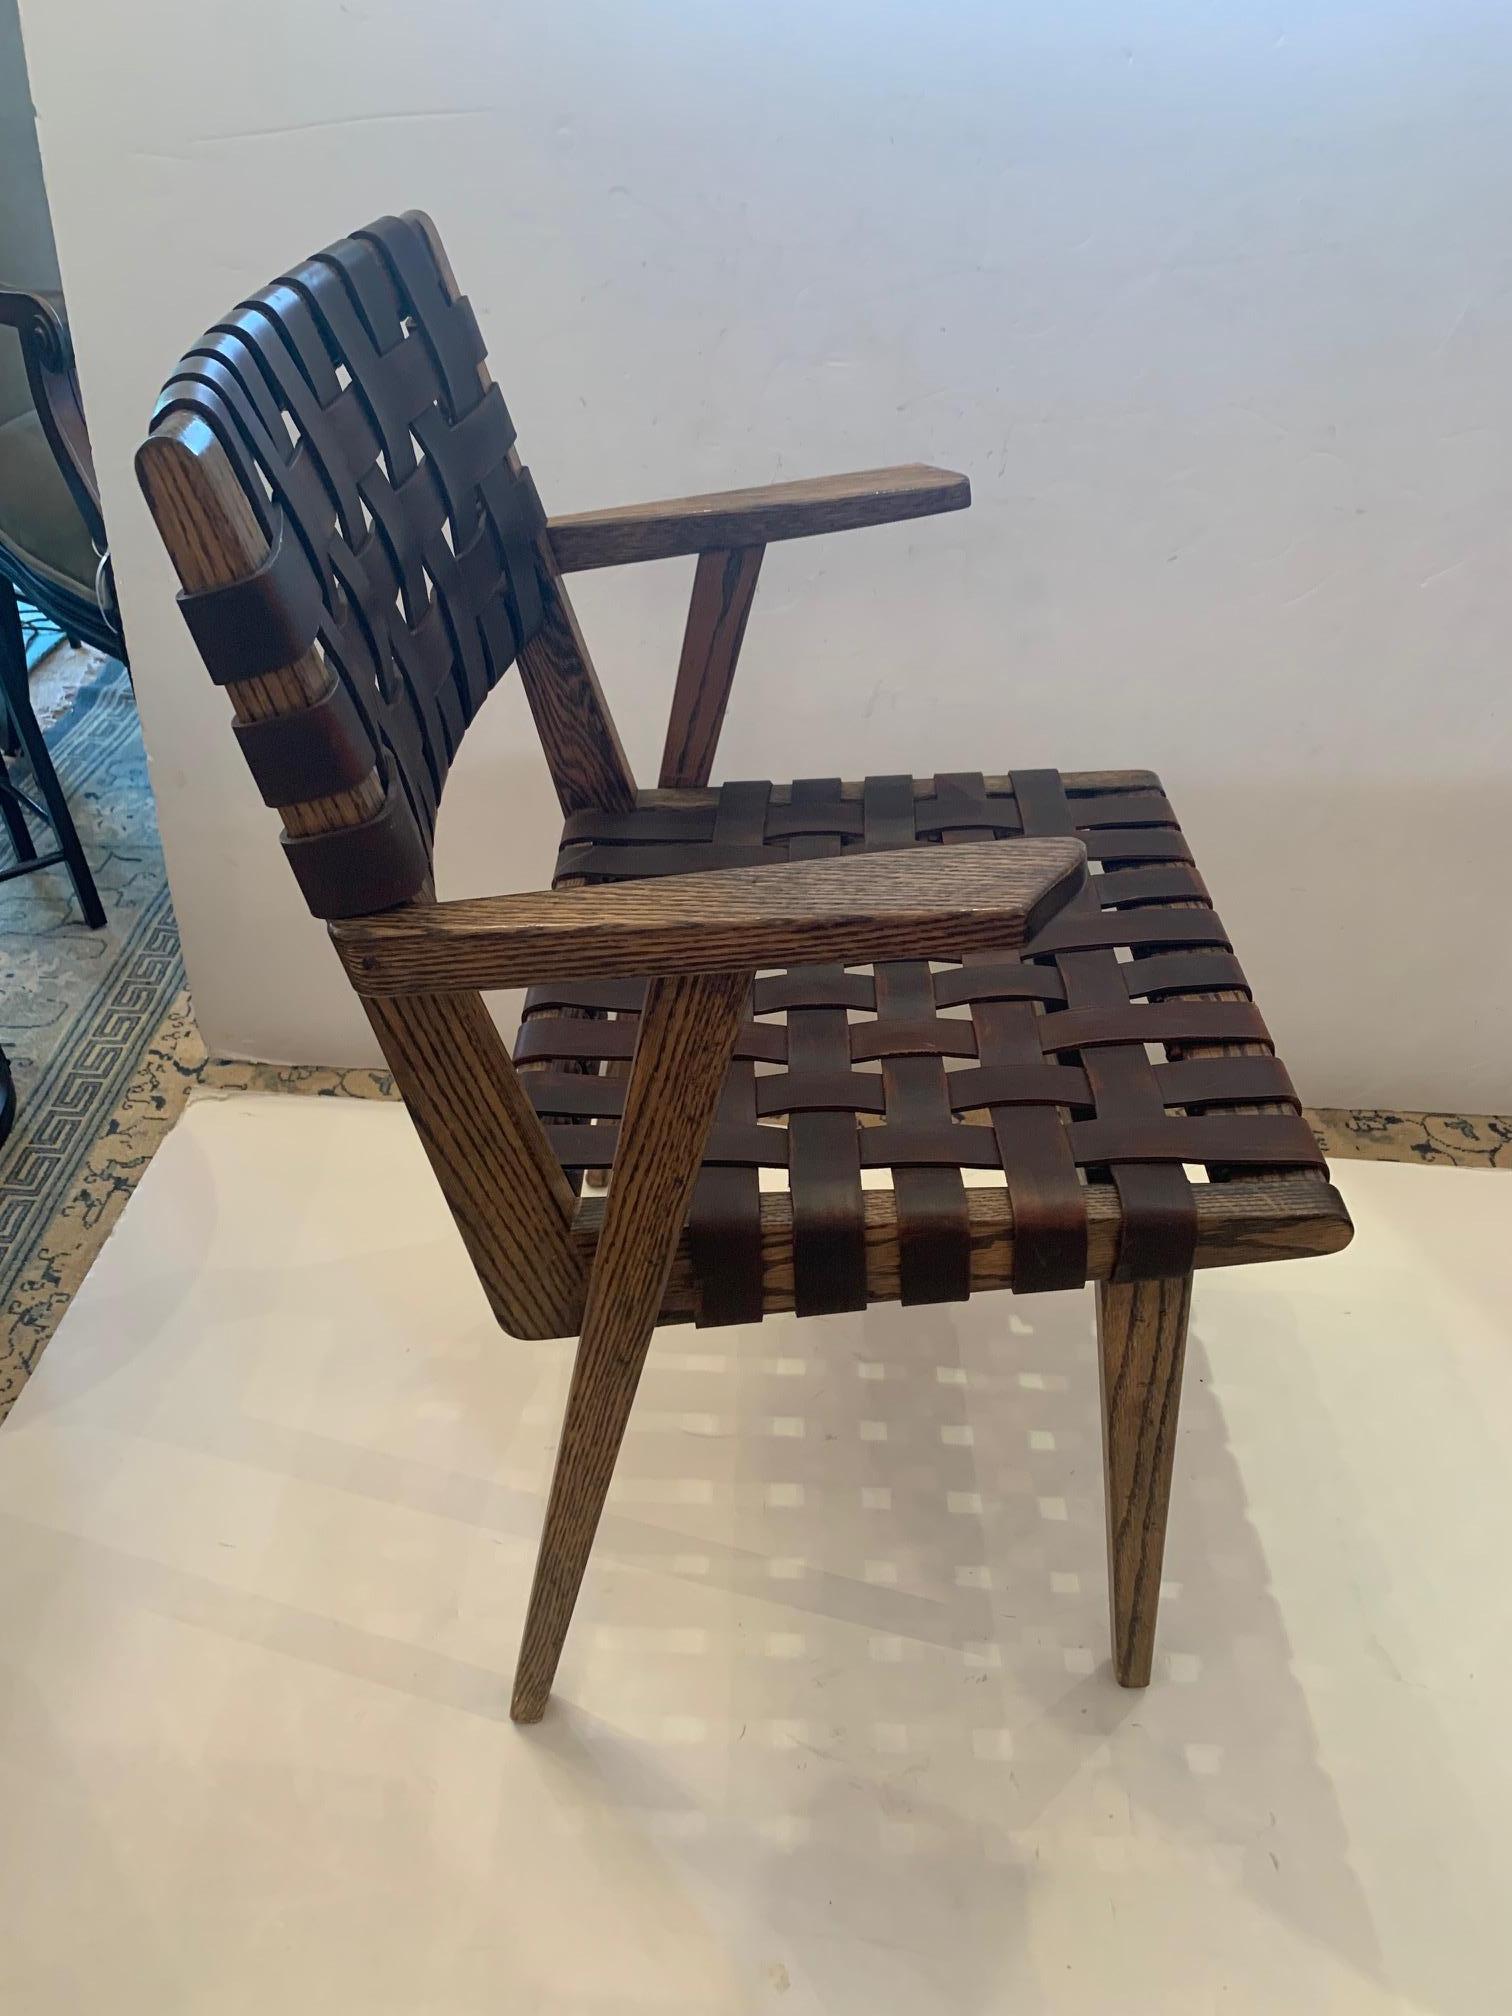 Un ensemble enviable de fauteuils de salle à manger vintage en chêne et cuir avec de lourdes sangles en cuir tressé dans le style et la manière de Jens Risom pour Knoll. Magnifique à l'avant comme à l'arrière, d'aspect riche et très confortable. Les